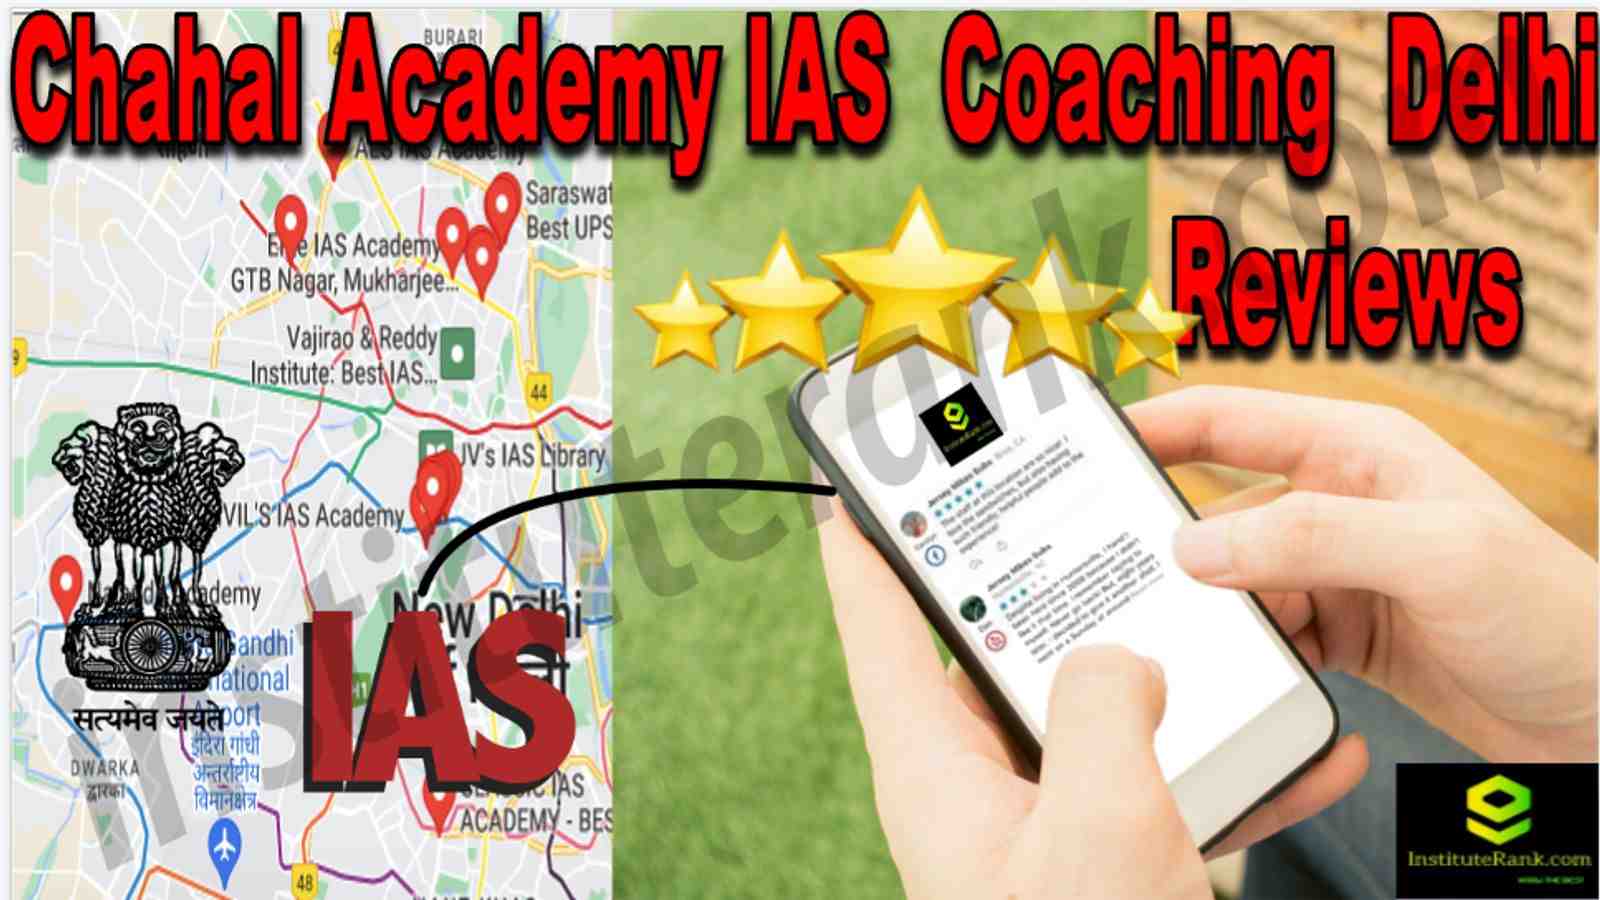 Chahal Academy IAS Coaching Delhi Reviews